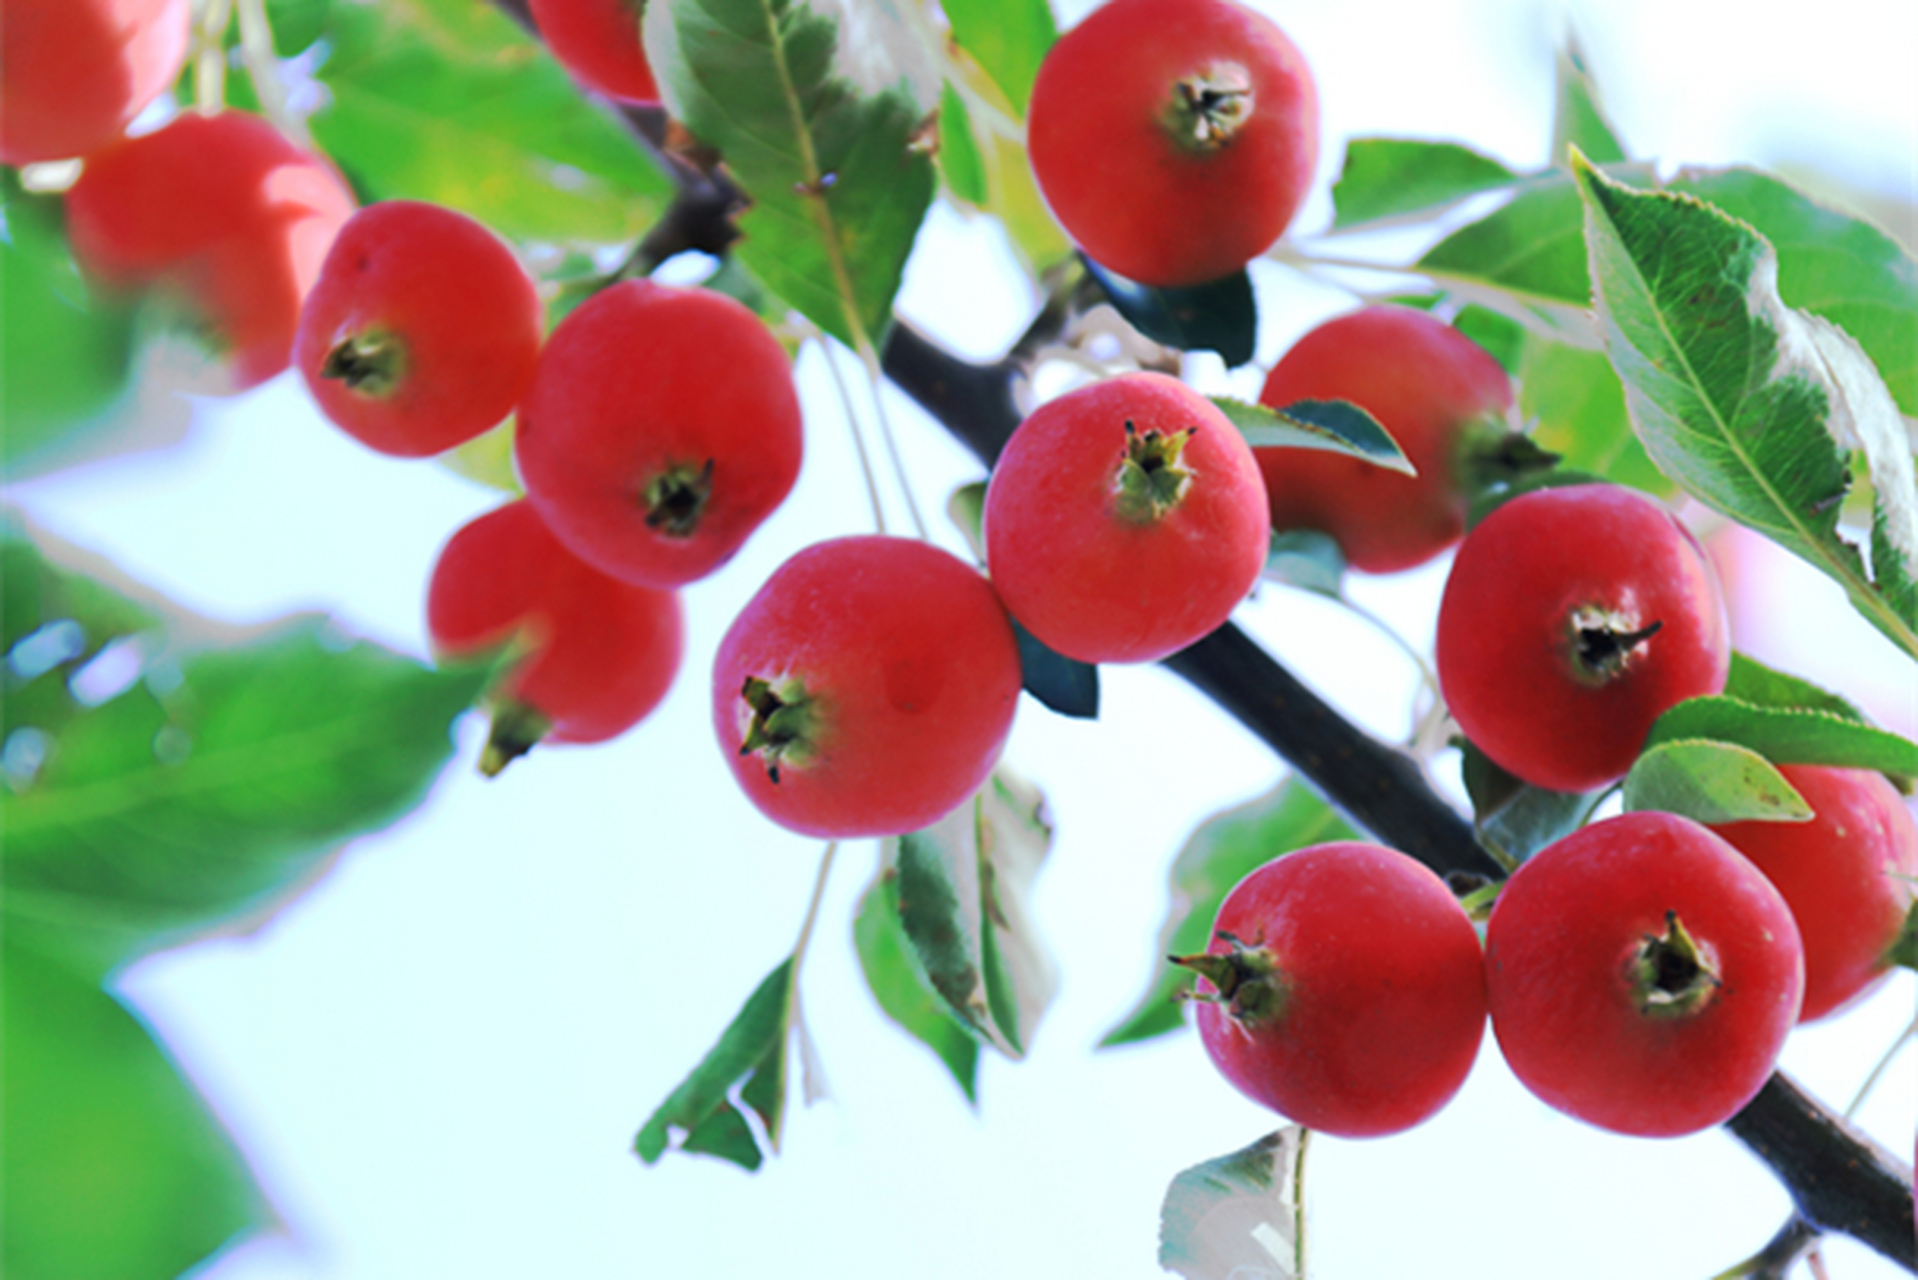 海红果是准格尔的特产水果之一,果形比较小,但是外观很红,成熟之后的